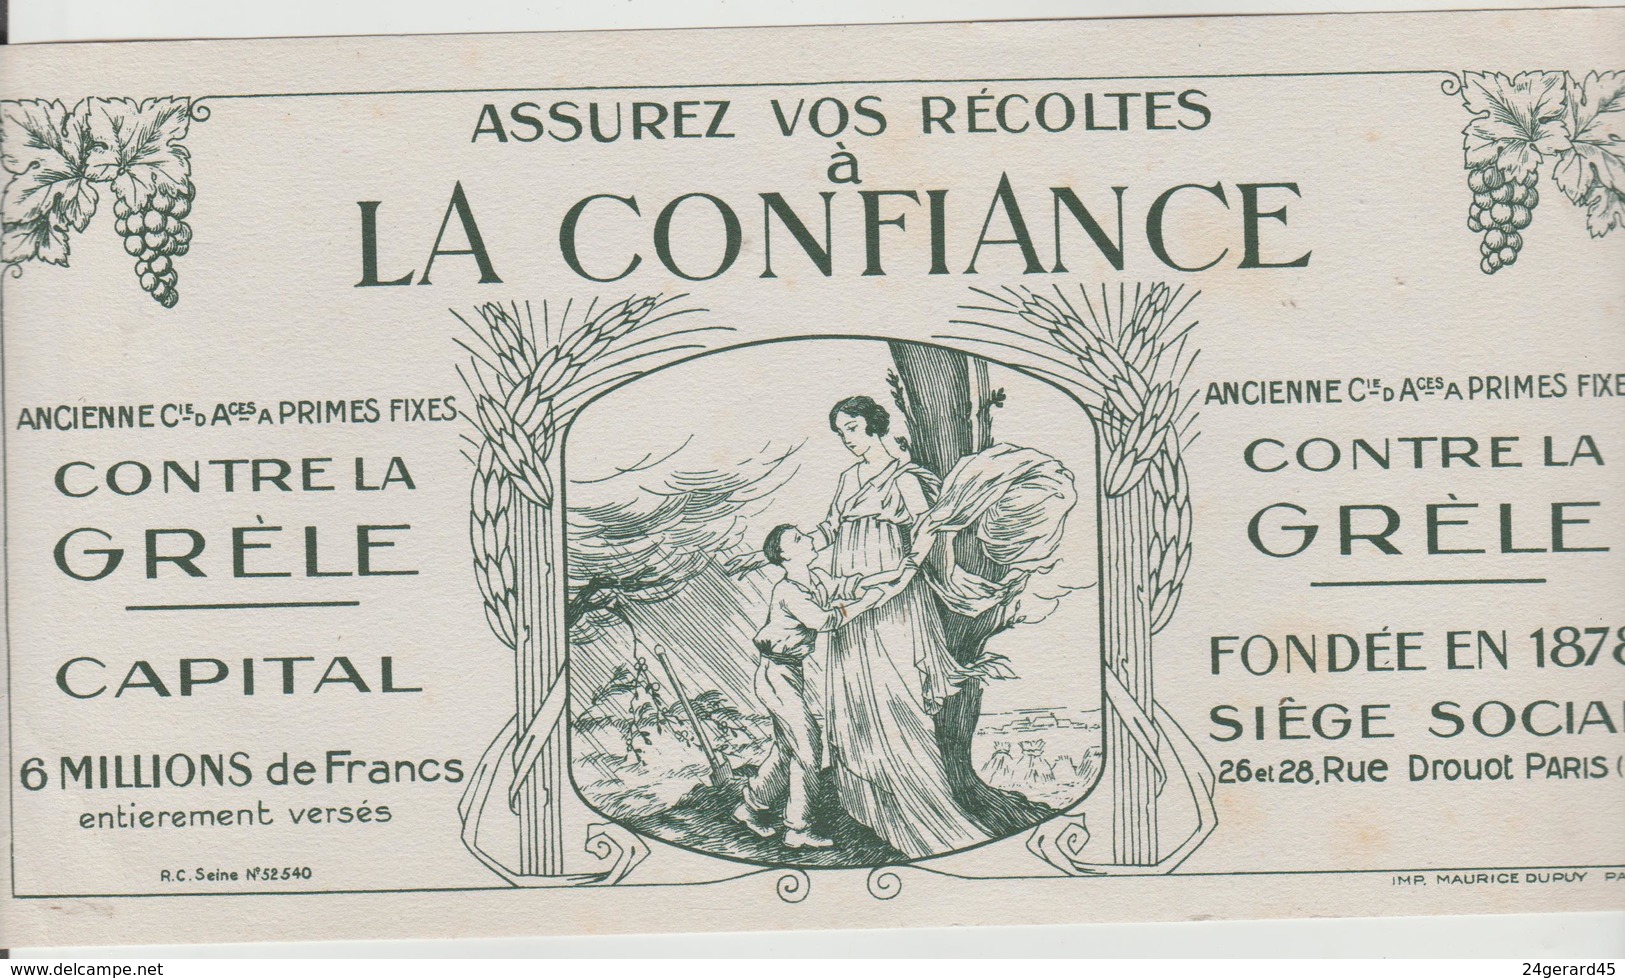 BUVARD PUBLICITAIRE - Assurance "LA CONFIANCE" 26/28 Rue Drouot PARIS 9ème - Banque & Assurance